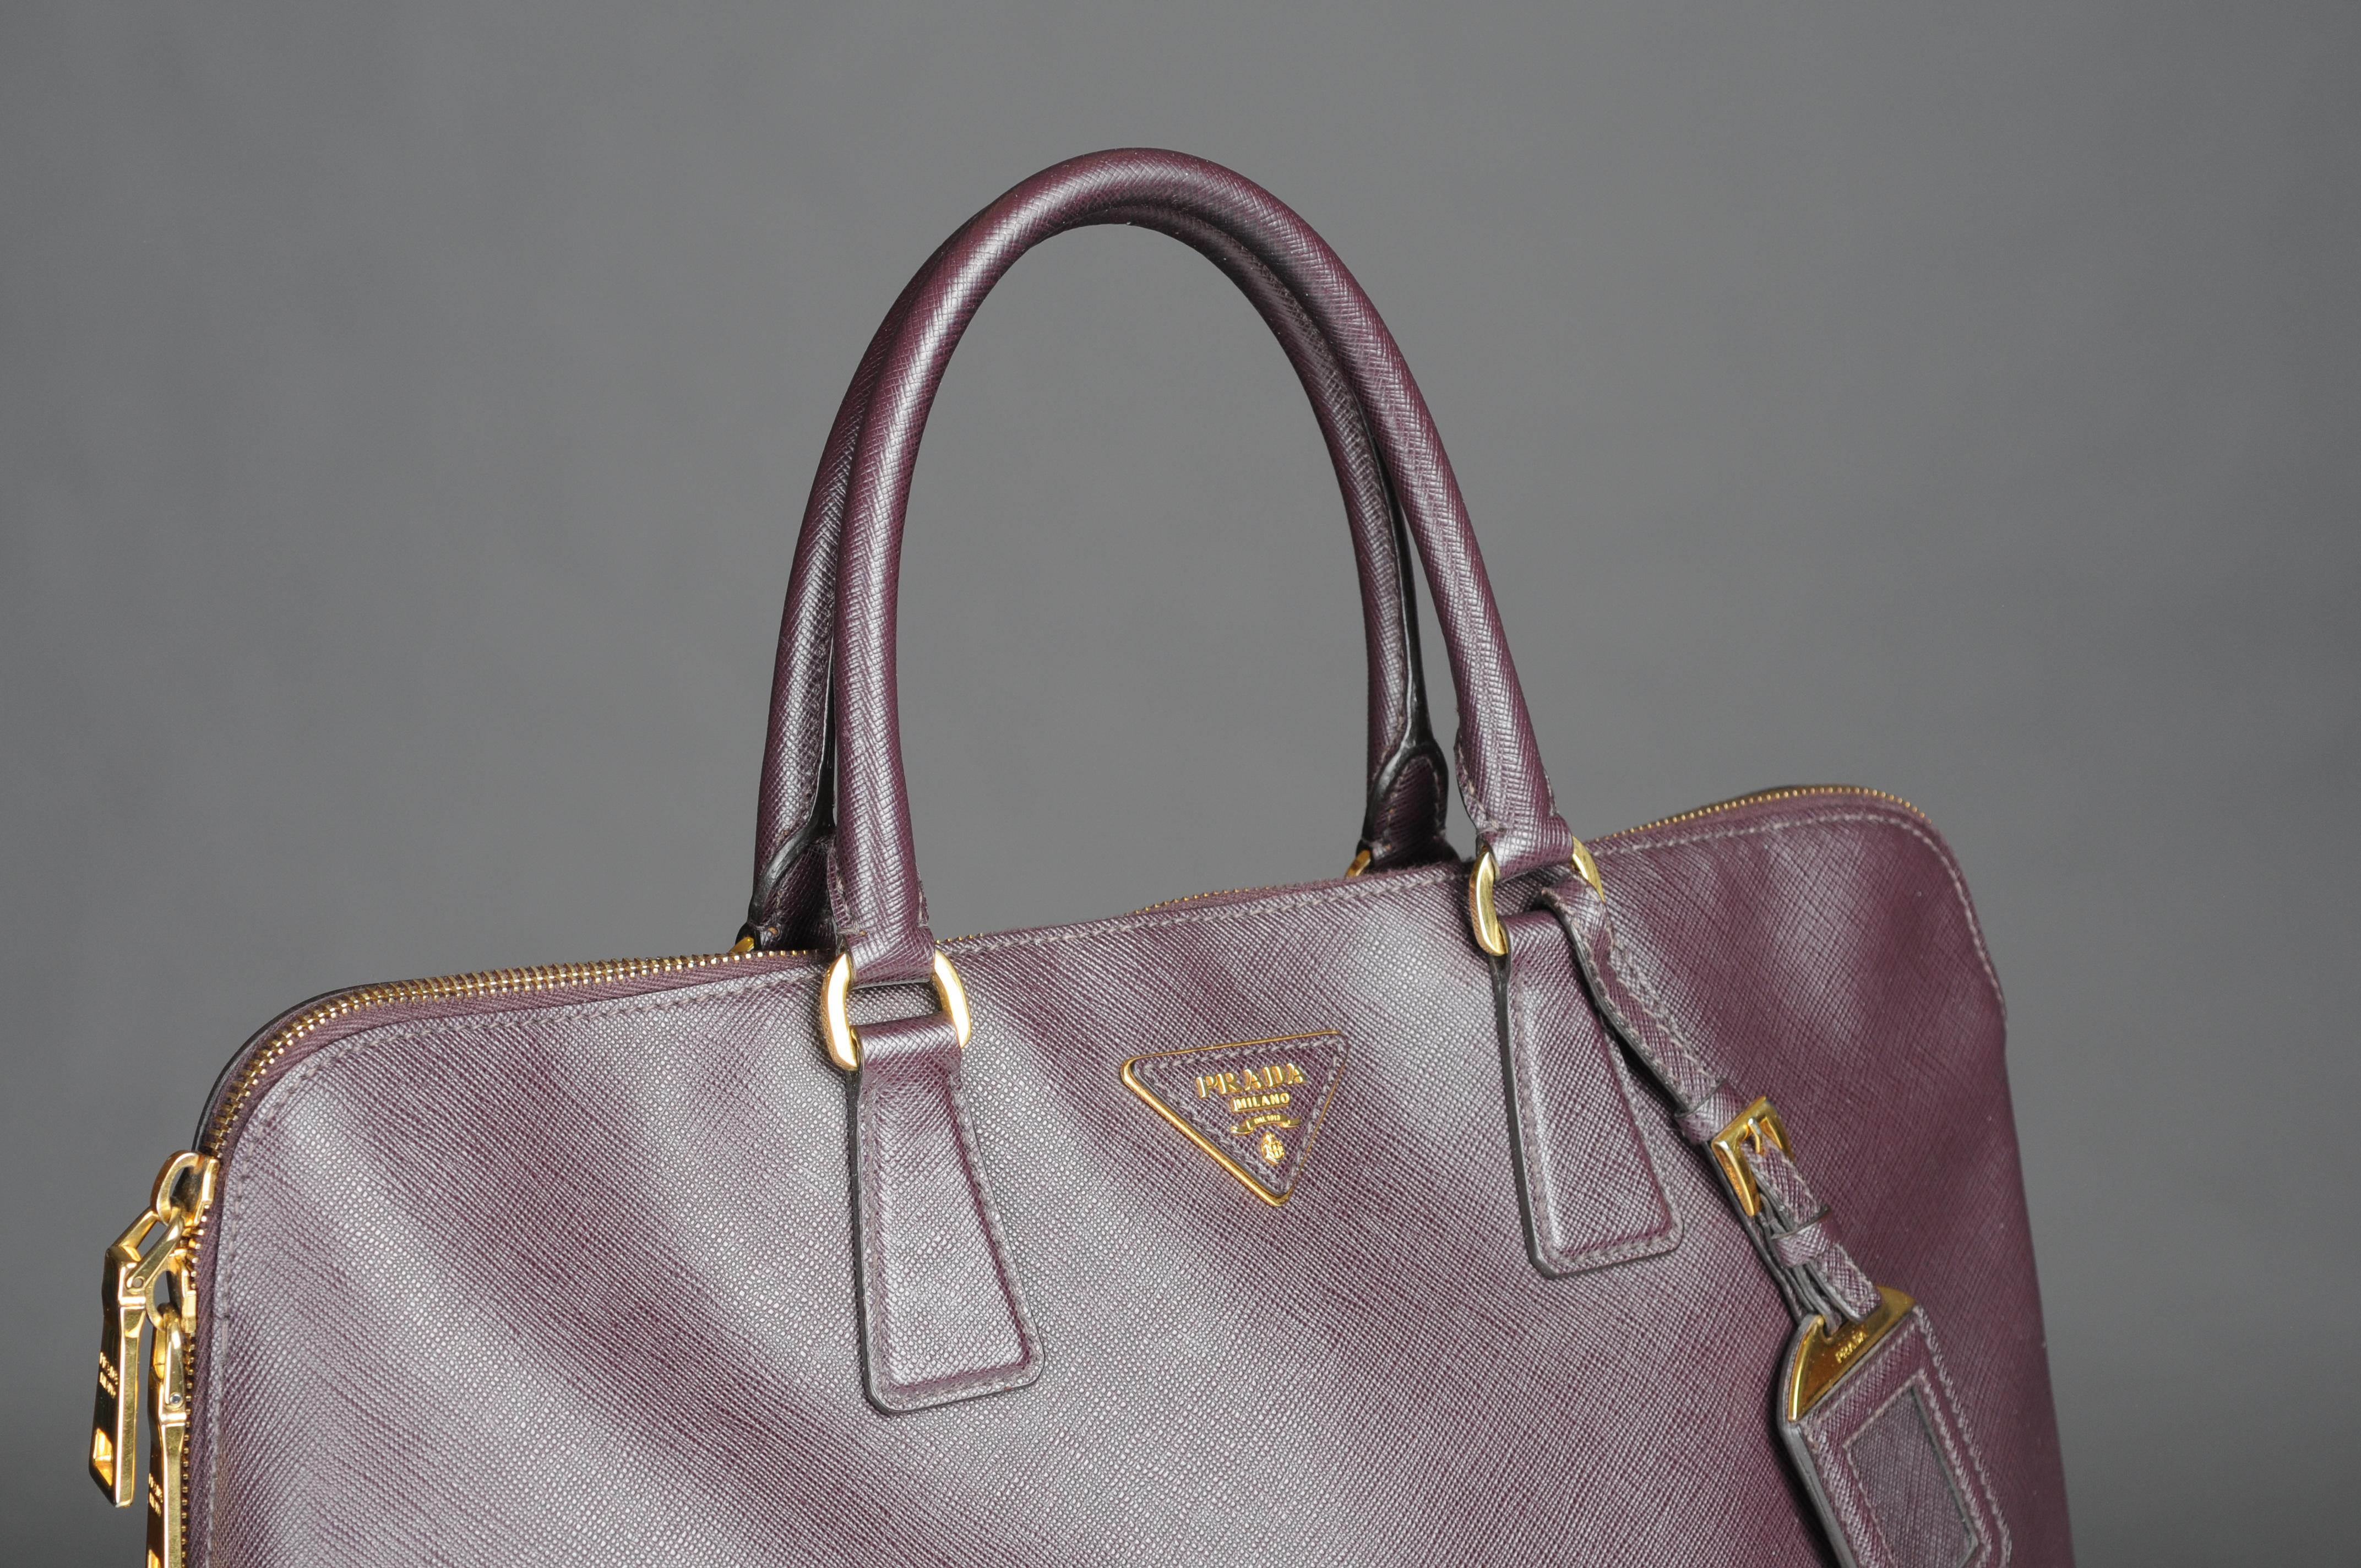 Vintage Prada Promenade Saffiano Leather Handbag  In Fair Condition For Sale In 10707, DE